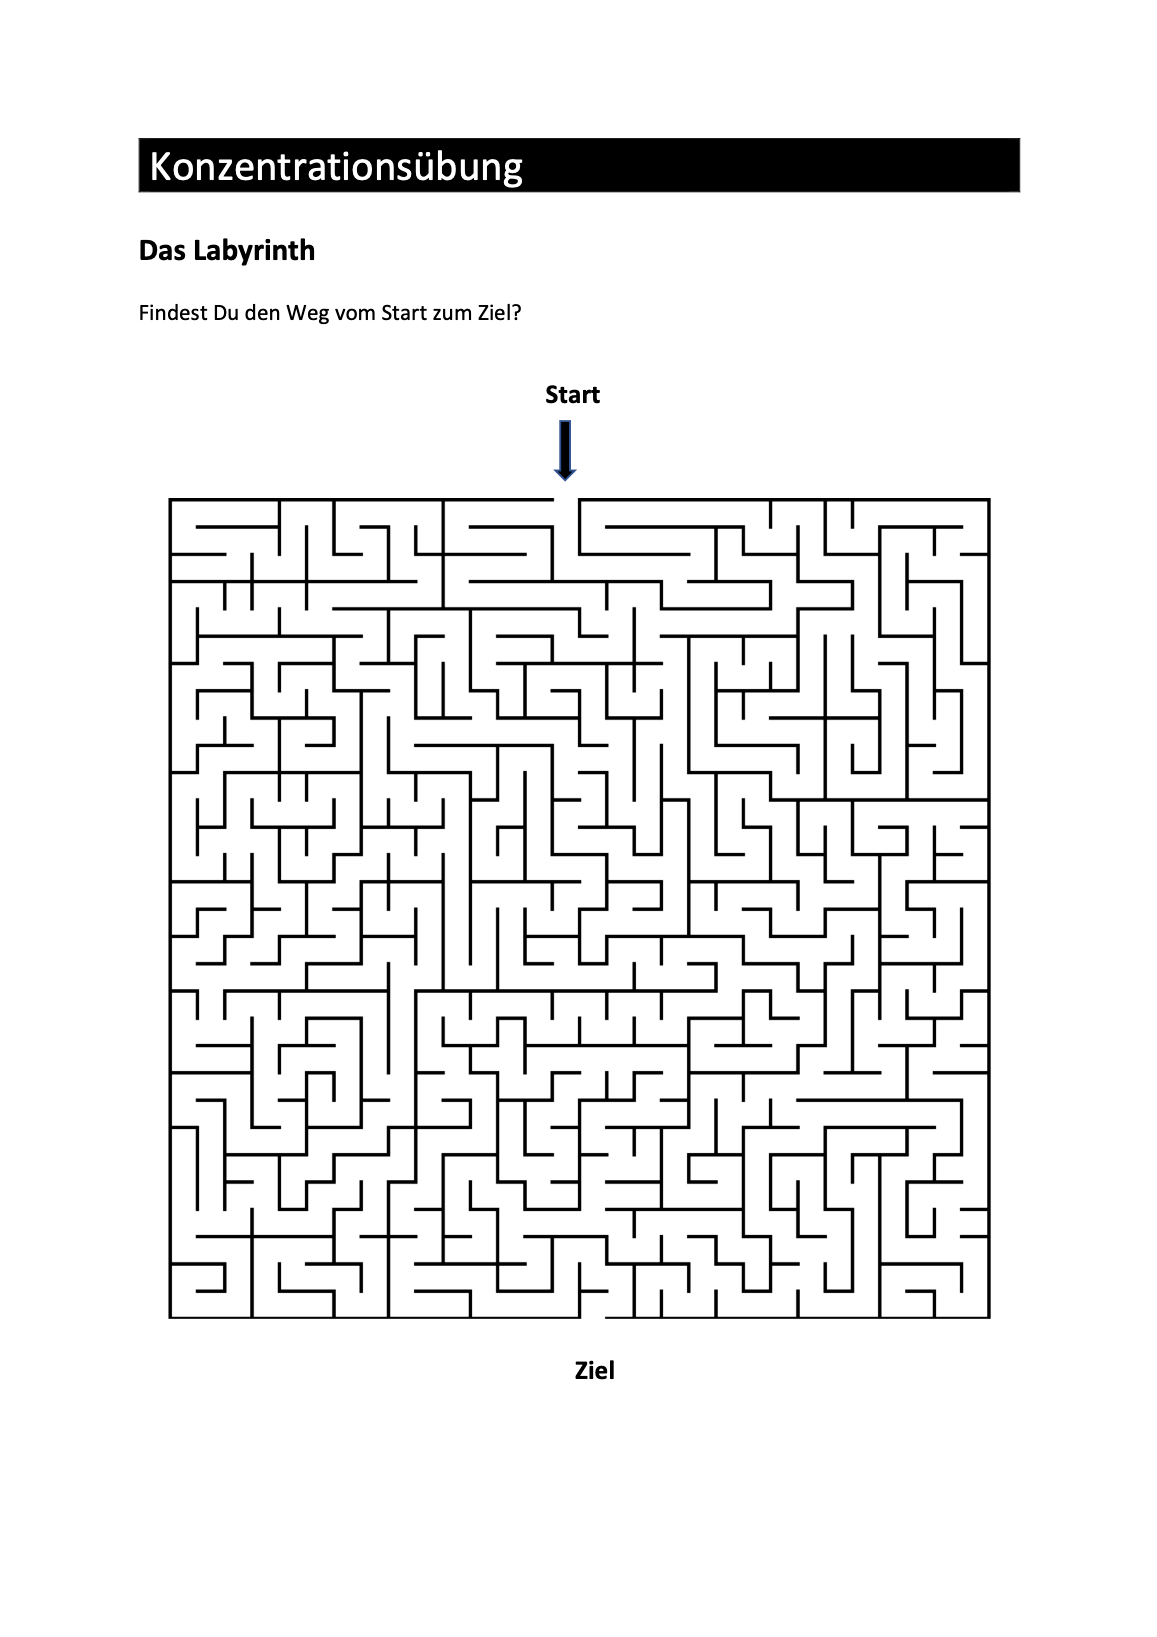 Konzentrationsübungen 5 - das Labyrinth